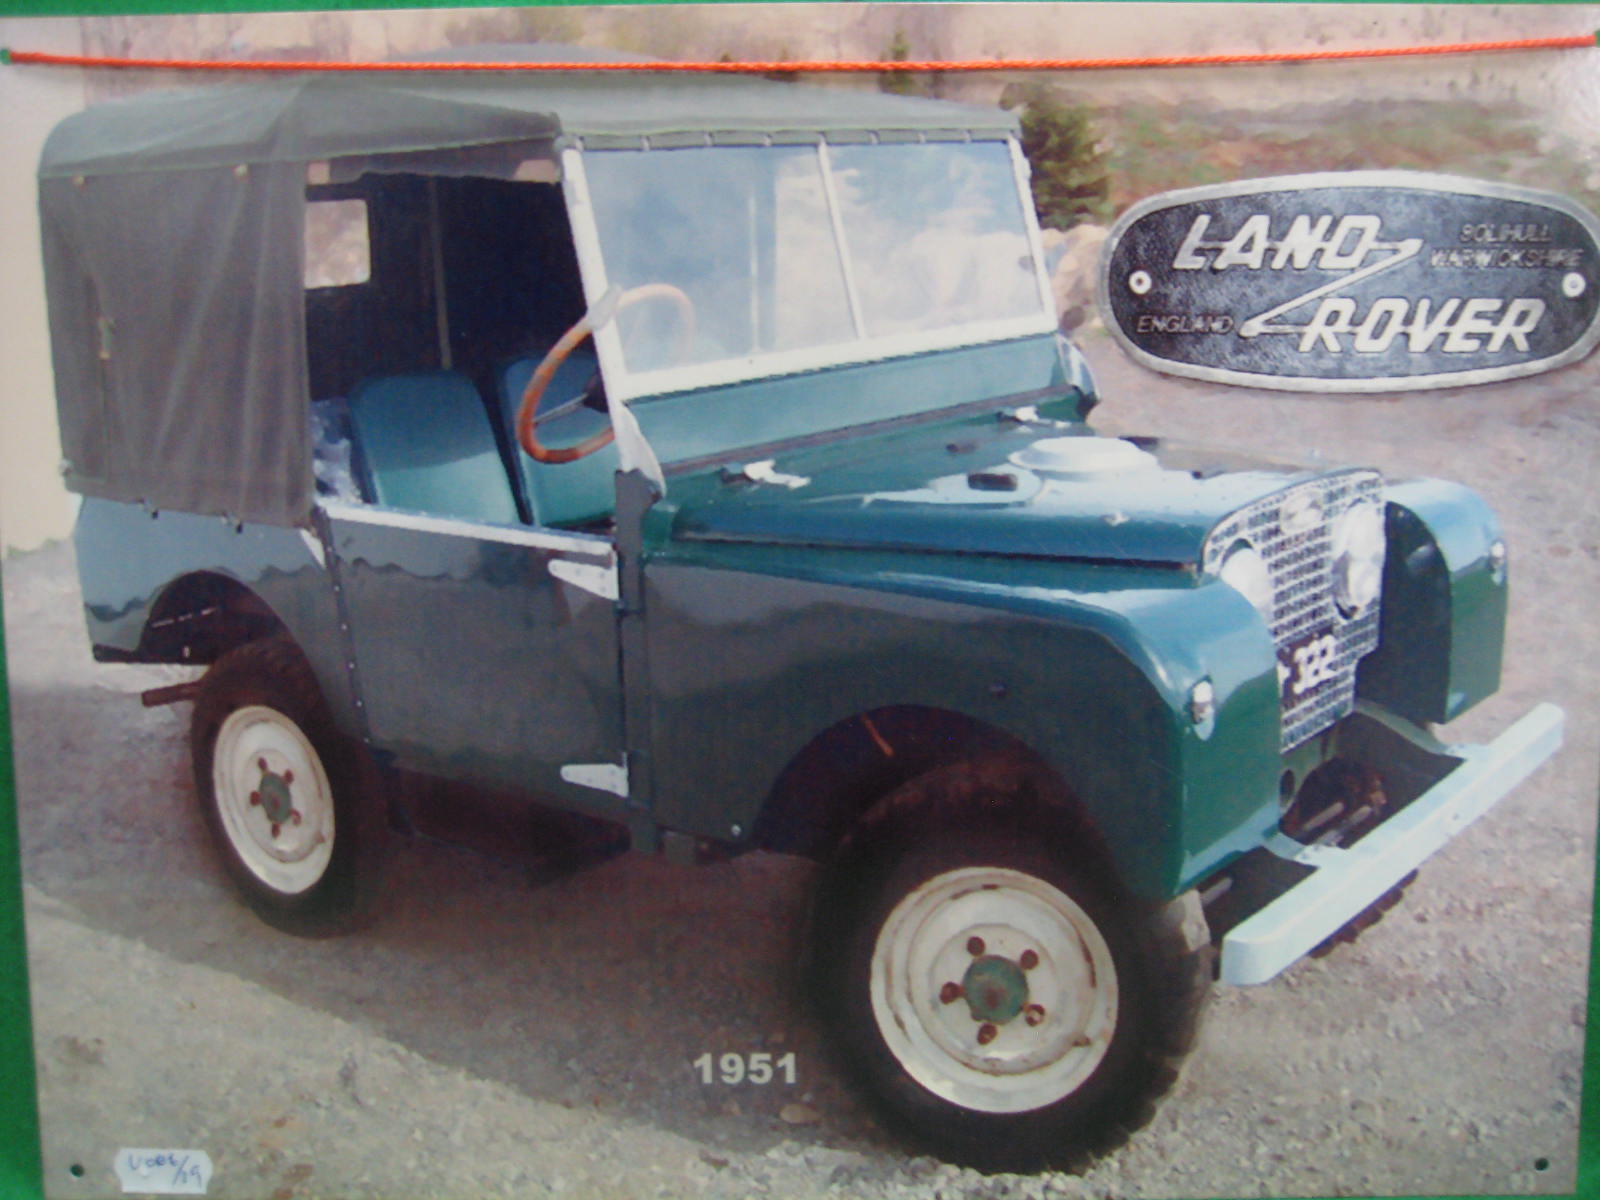 A tin advertising sign Land Rover